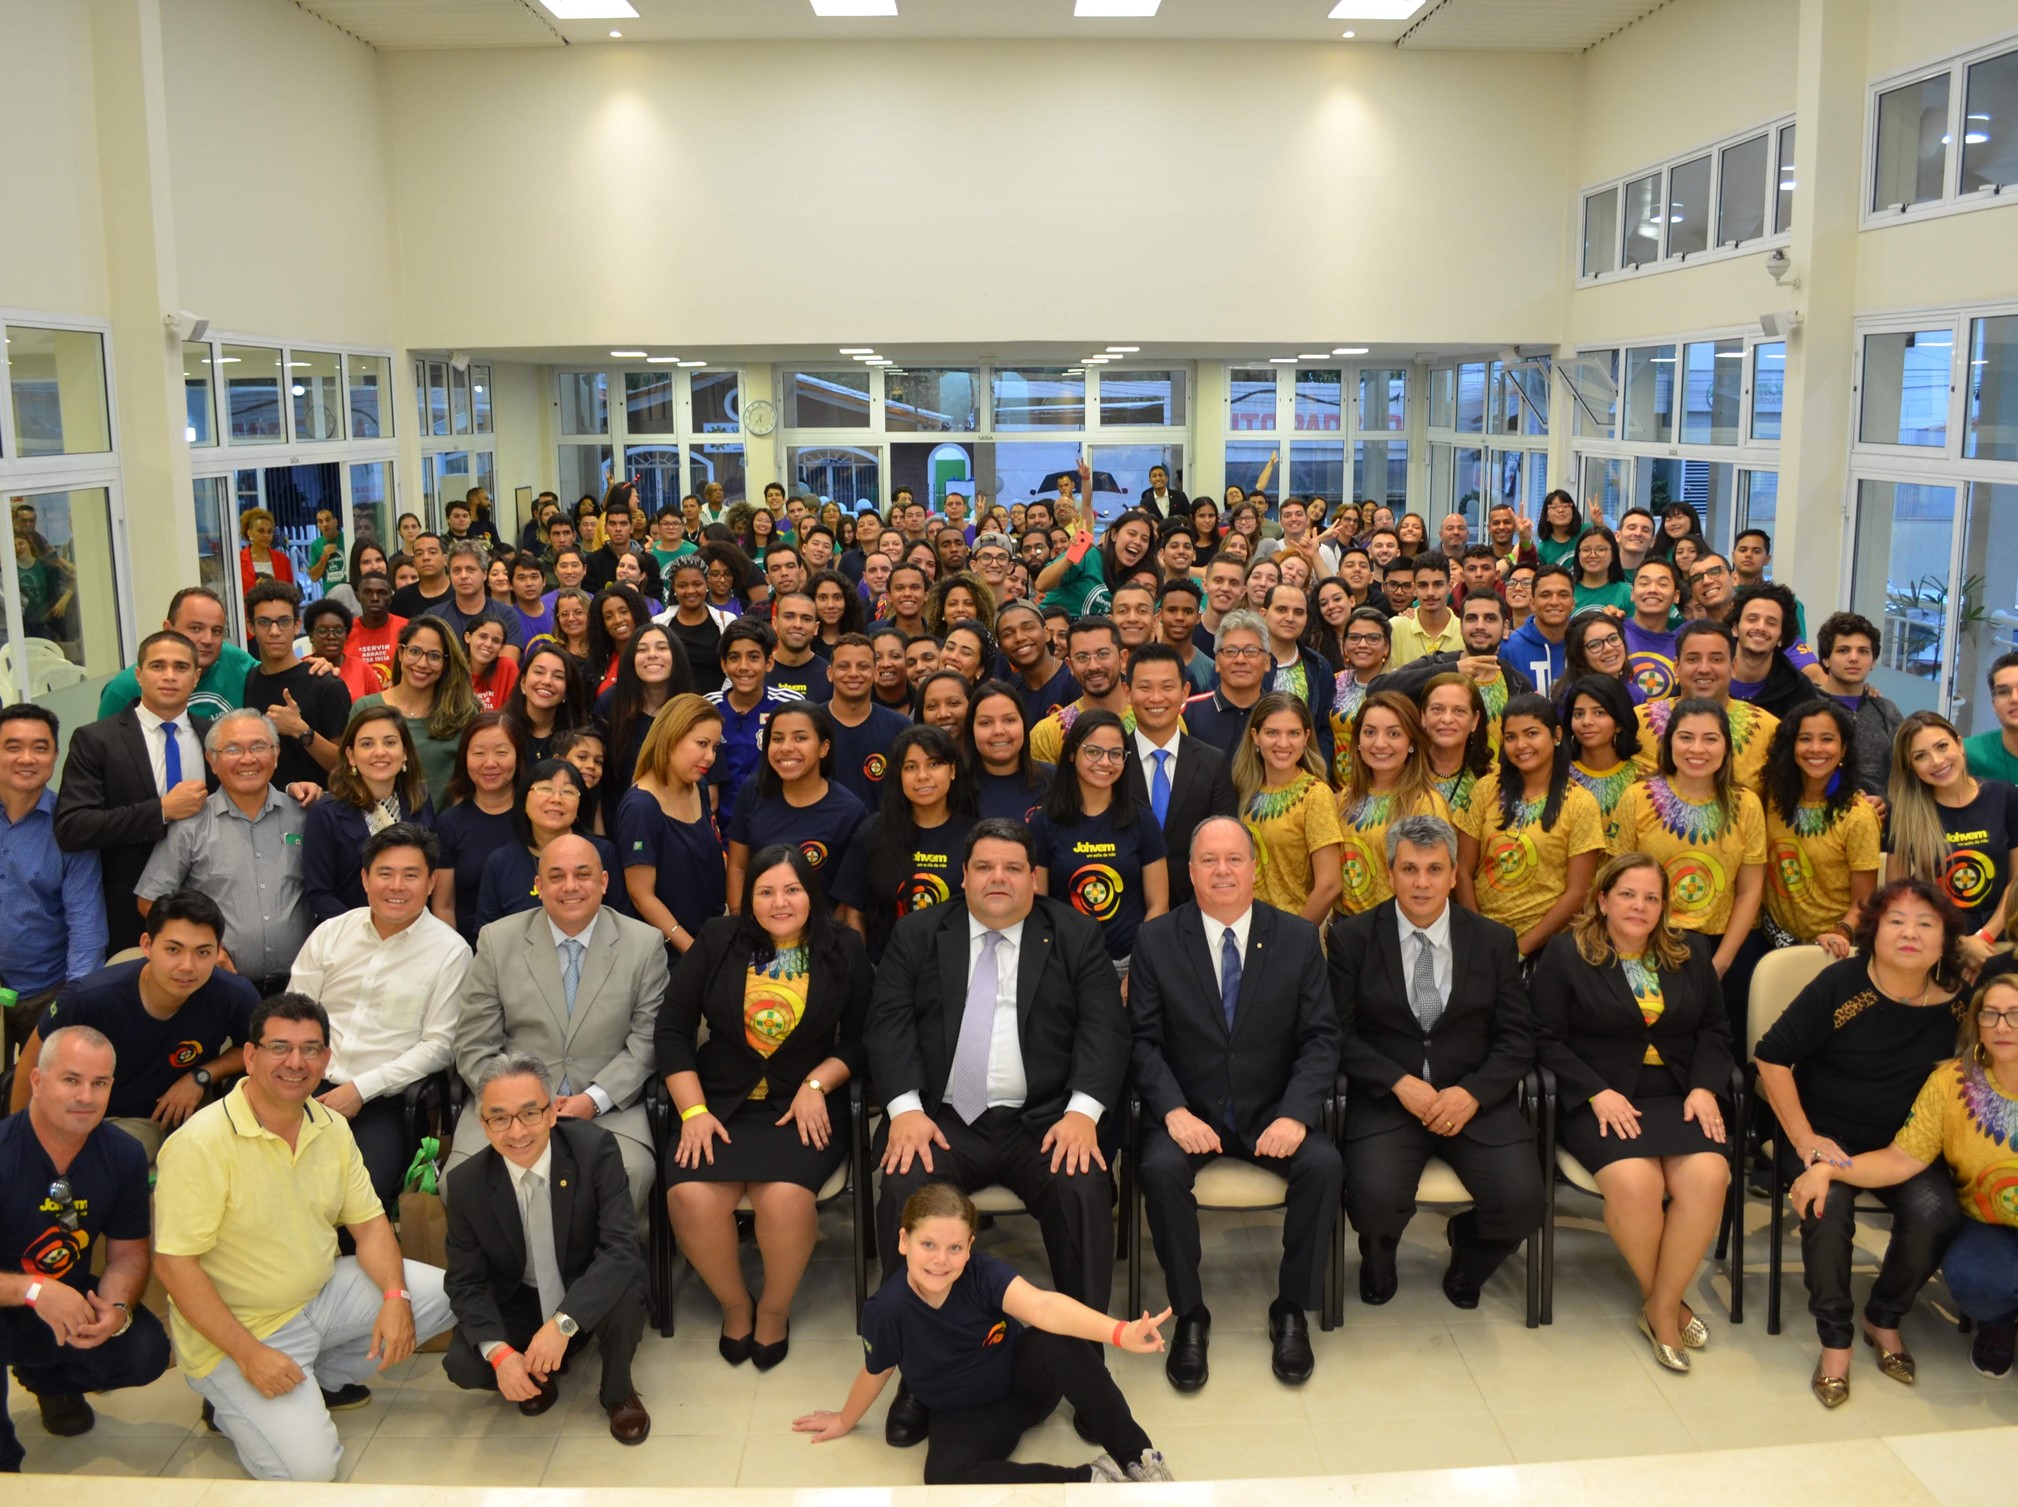 Igreja São José dos Campos (SP) recebe 430 participantes para intercâmbio de jovens